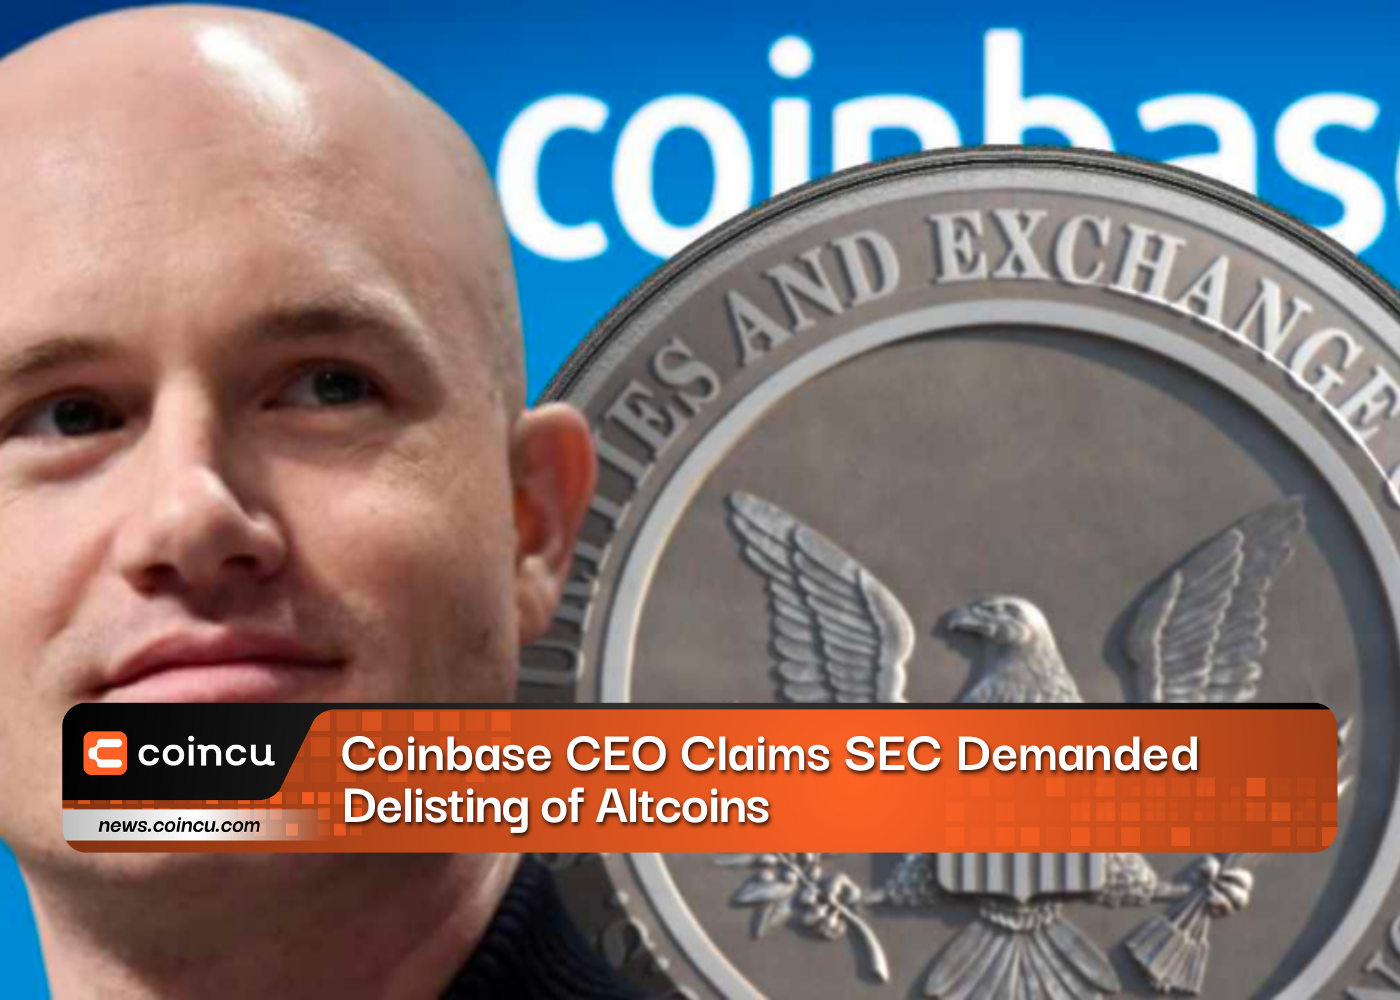 Coinbase 首席执行官声称 SEC